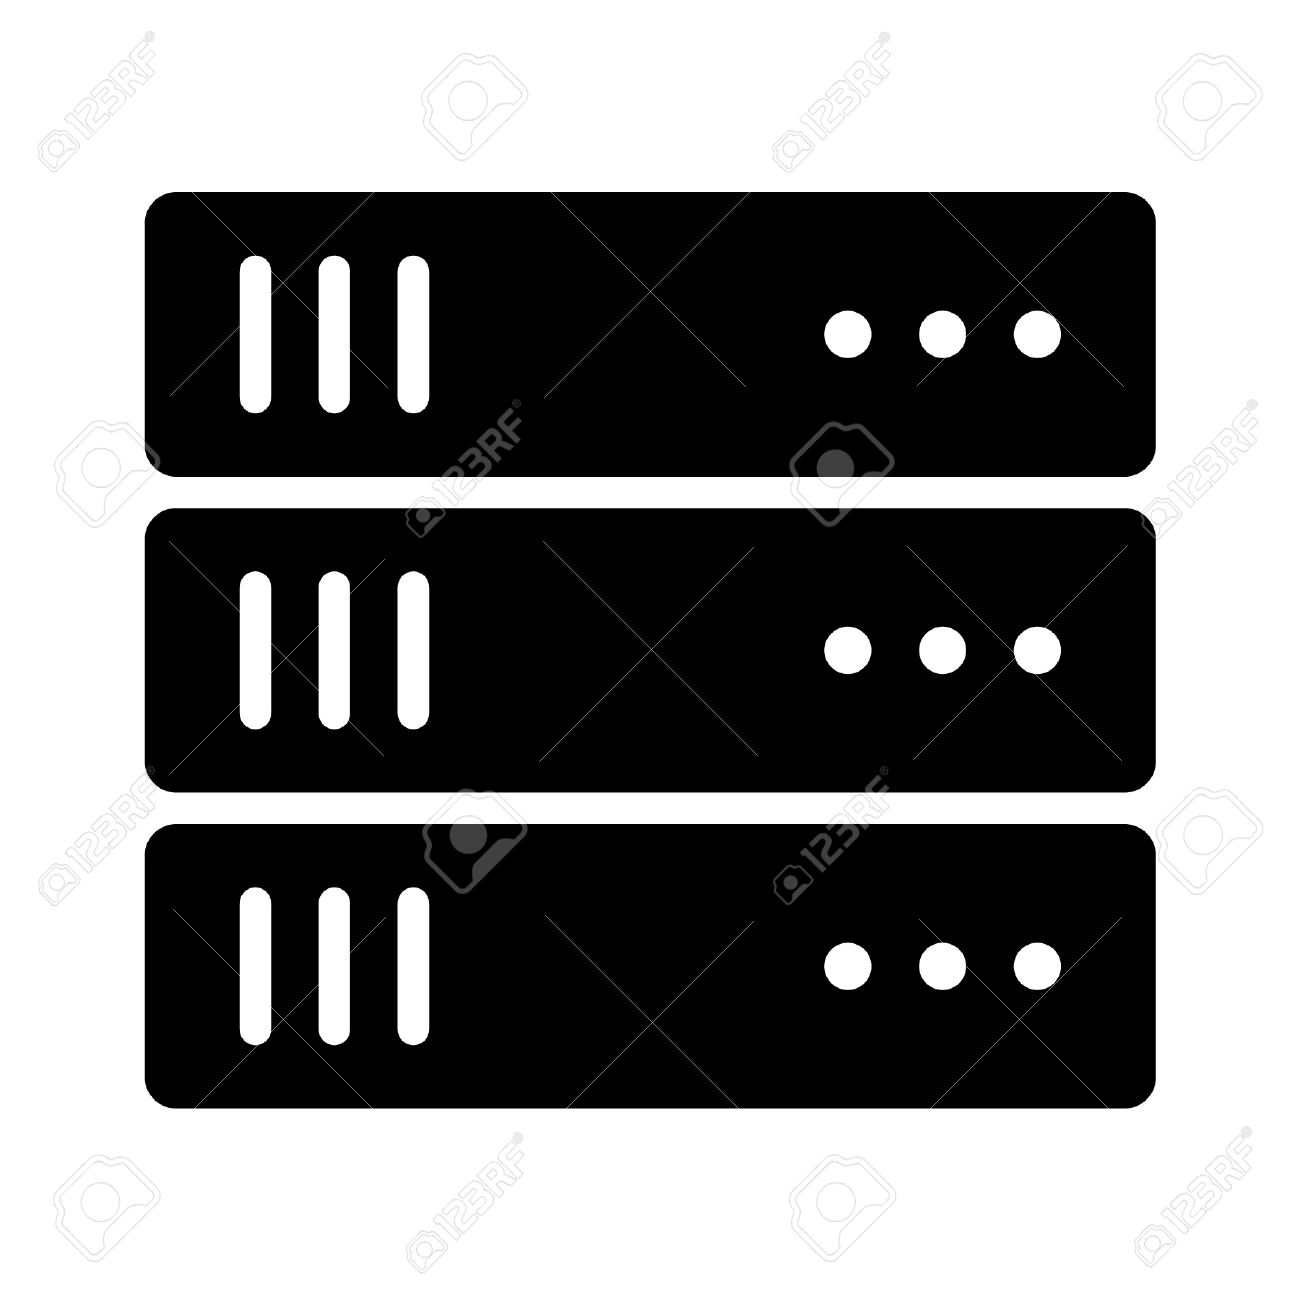 Server Icon Image. Large Flat Icons